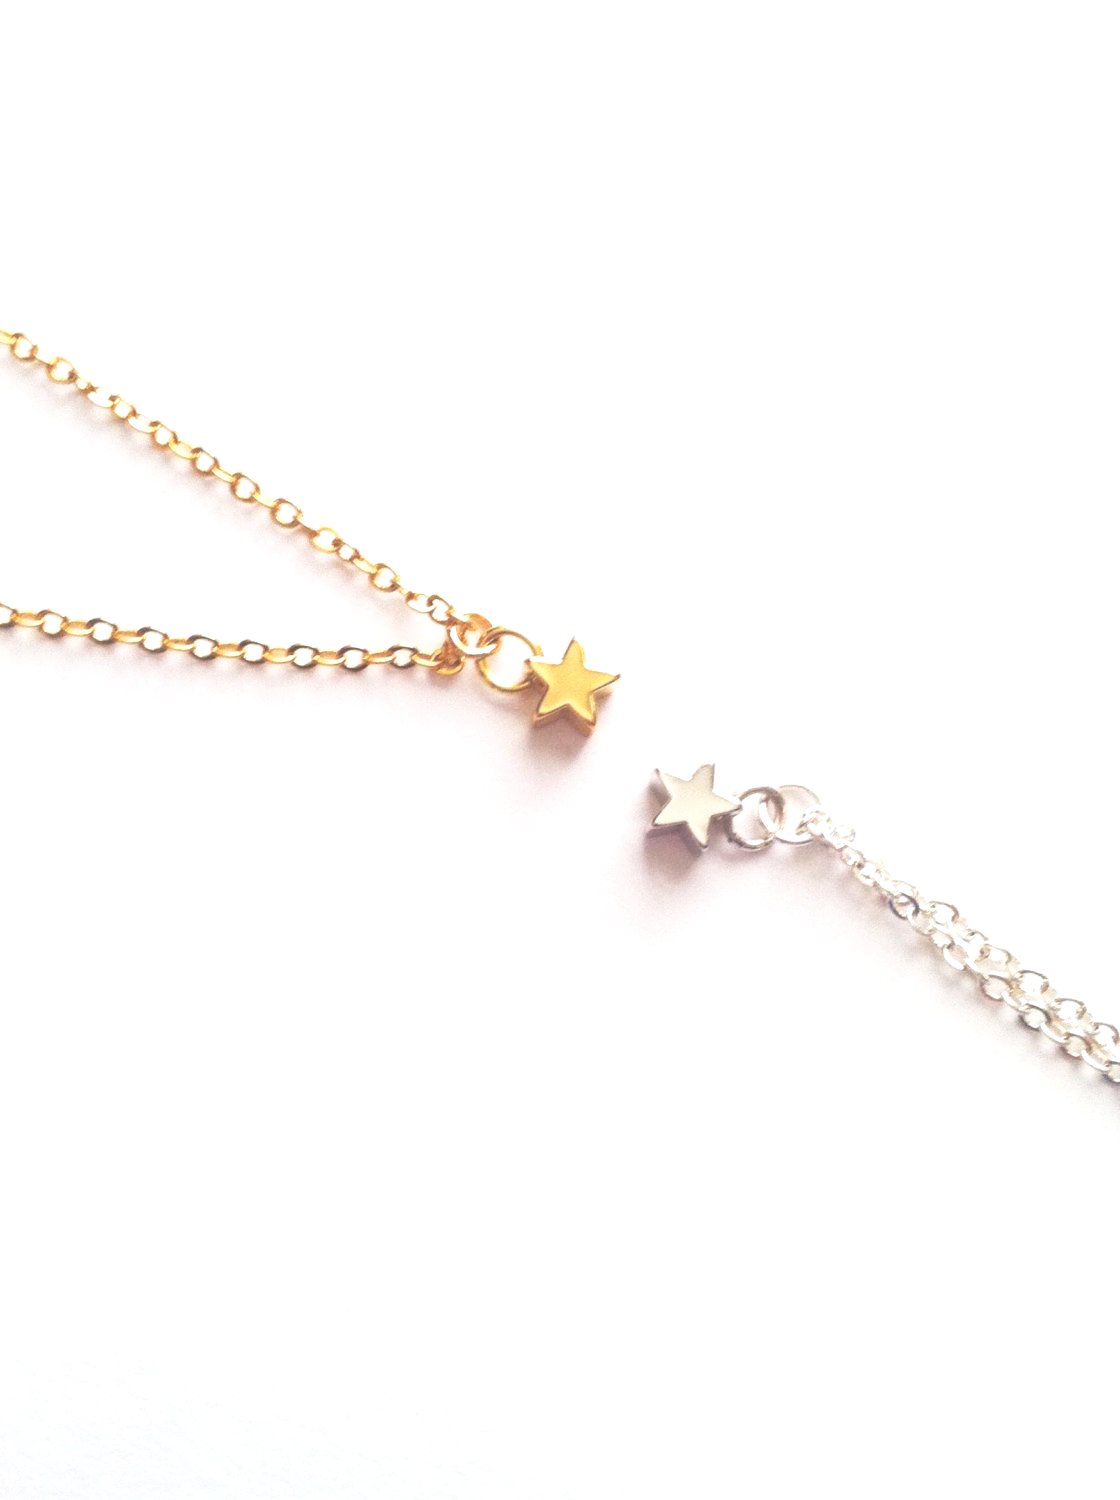 Minimalist Tiny Star Necklace | IB Jewelry